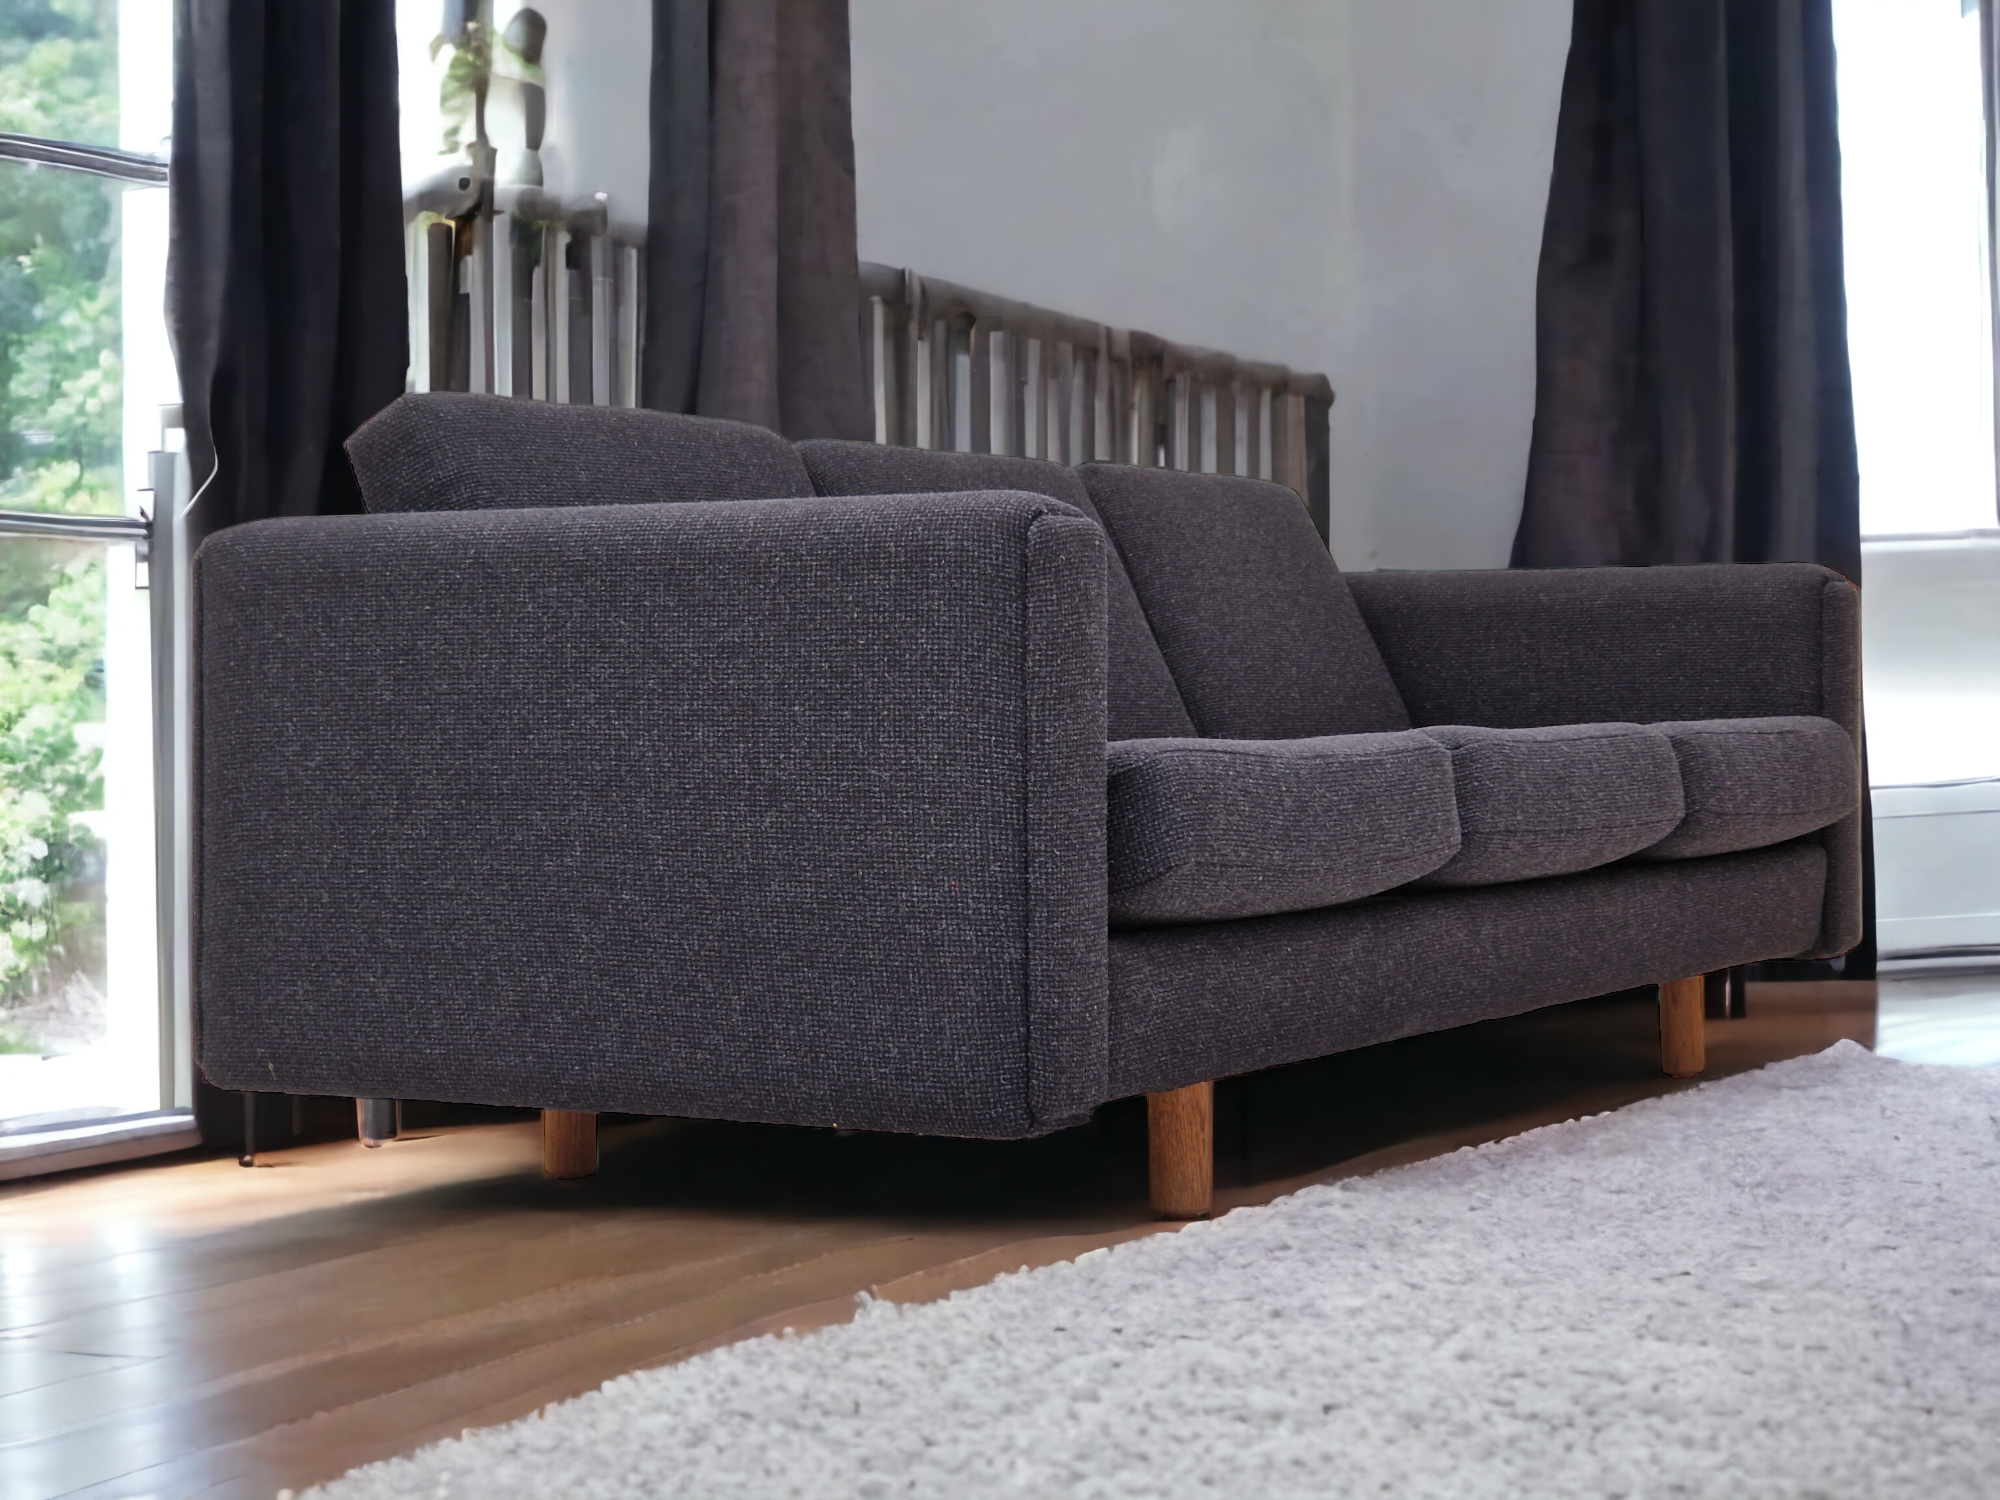 70erne, Dansk design af H.J.Wegner, model GE 300, total renoveret sofa.